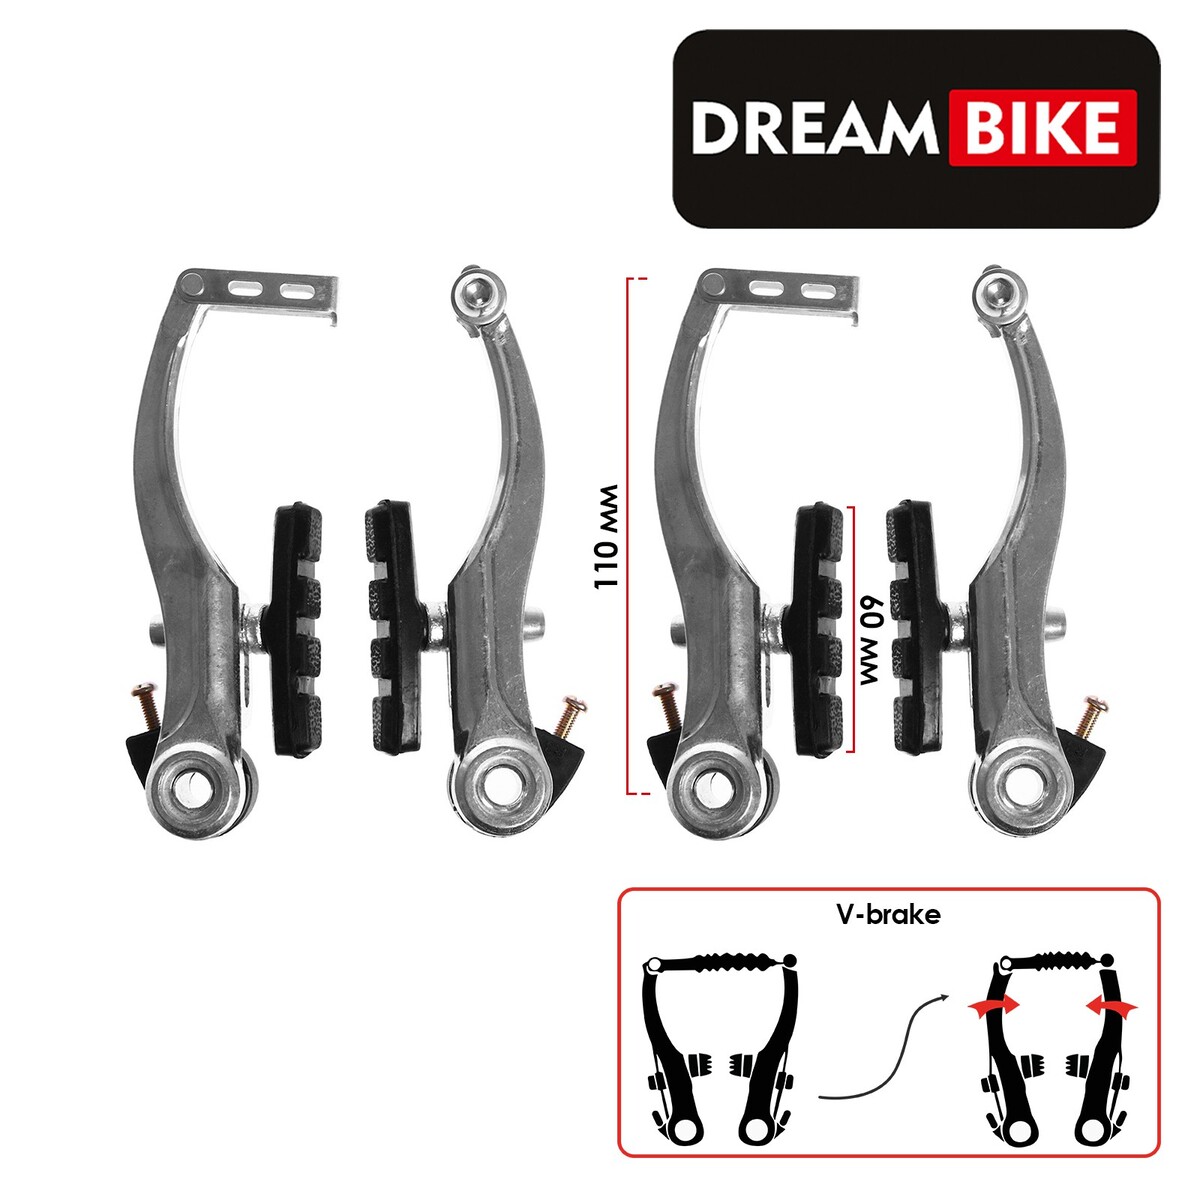 Комплект тормозов dream bike, v-brake, алюминий, рамки 110 мм, колодки 60 мм, цвет серебристый Dream Bike